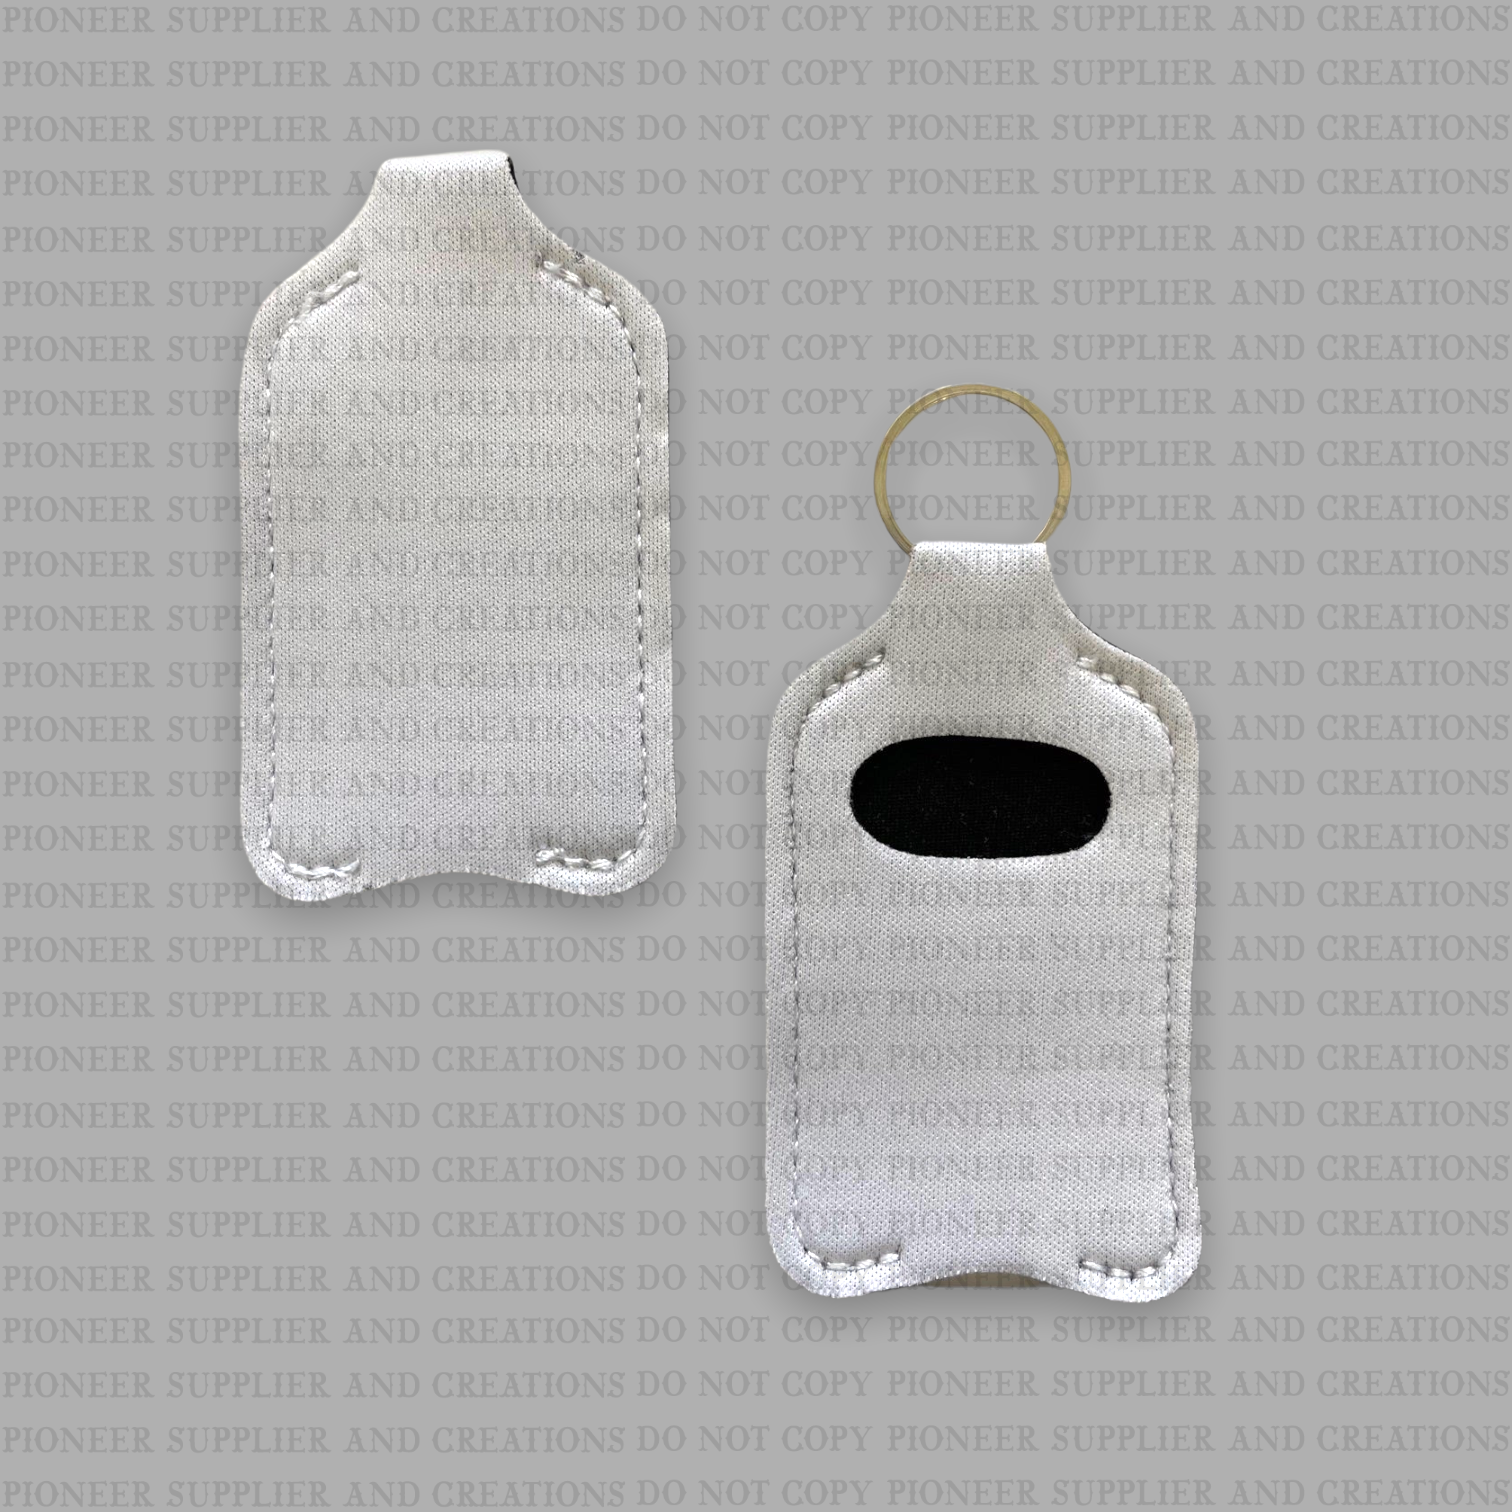 Inhaler Holder Keychain - Pioneer Supplier & Creations